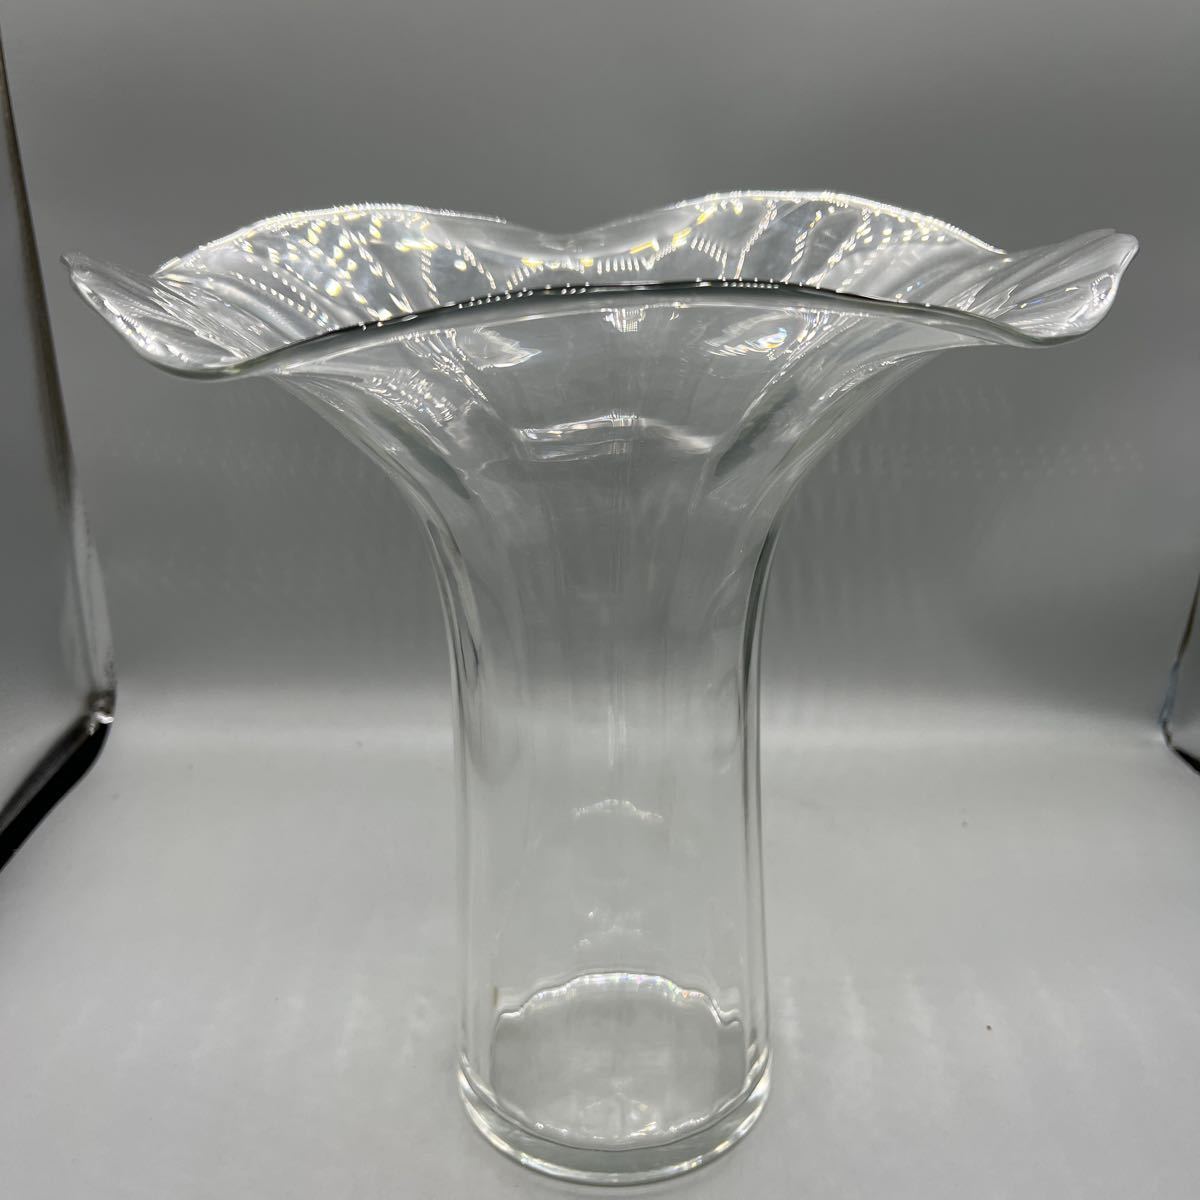 注目ショップ・ブランドのギフト イタリア製 クリスタル花瓶